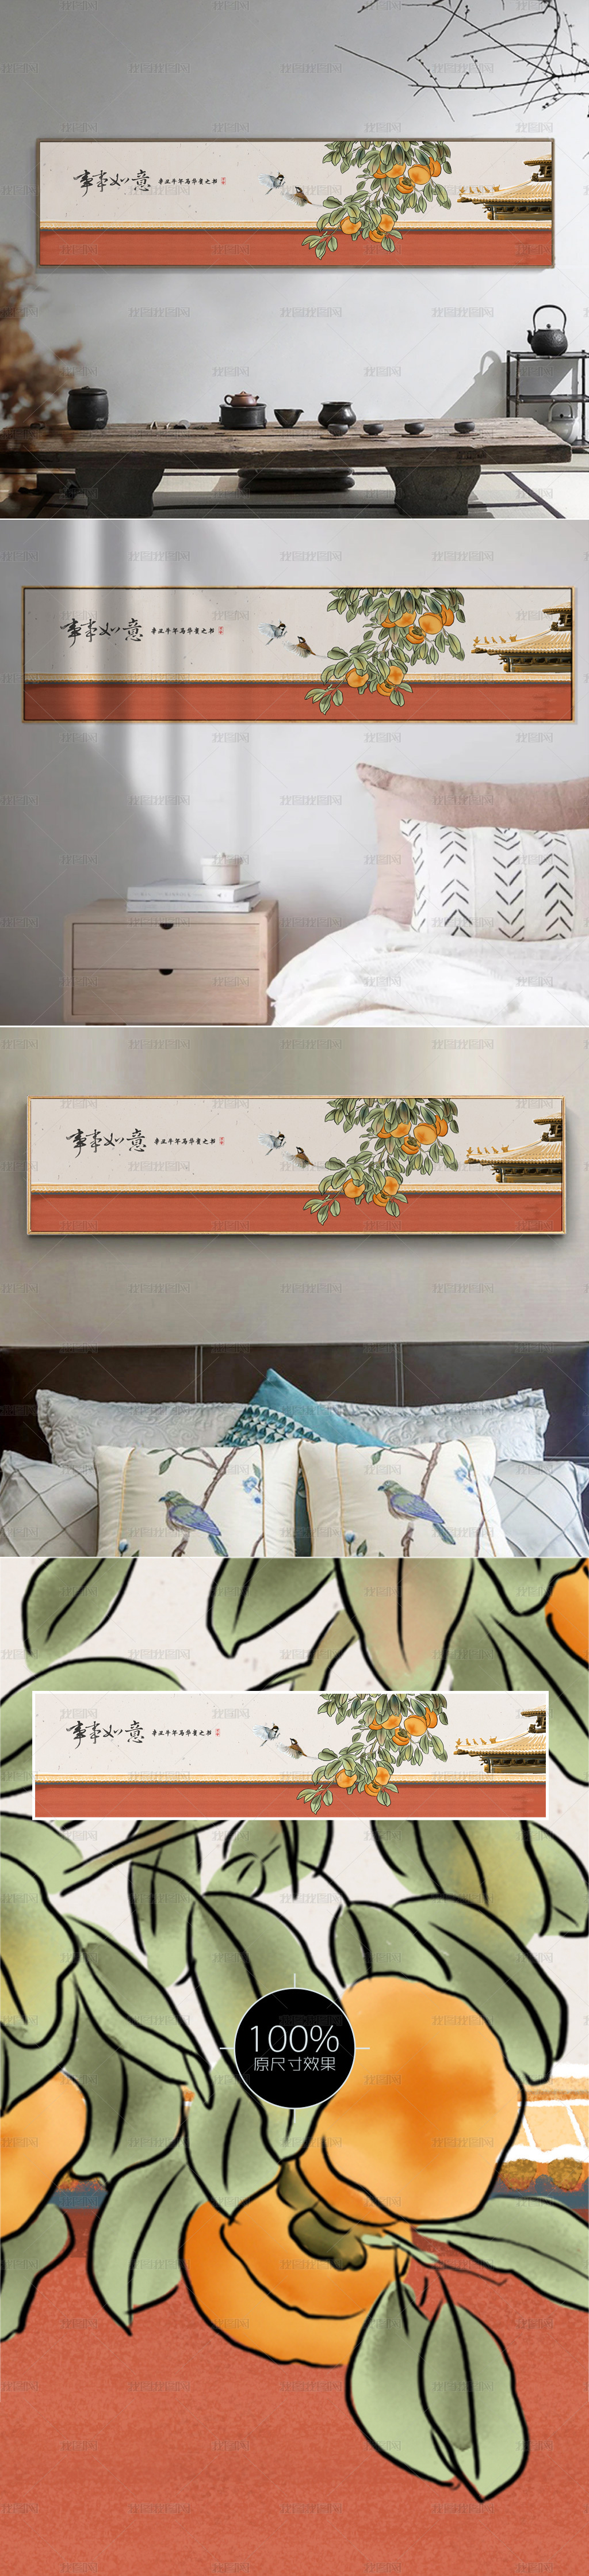 新中式现代简约柿子树事事如意床头画装饰画